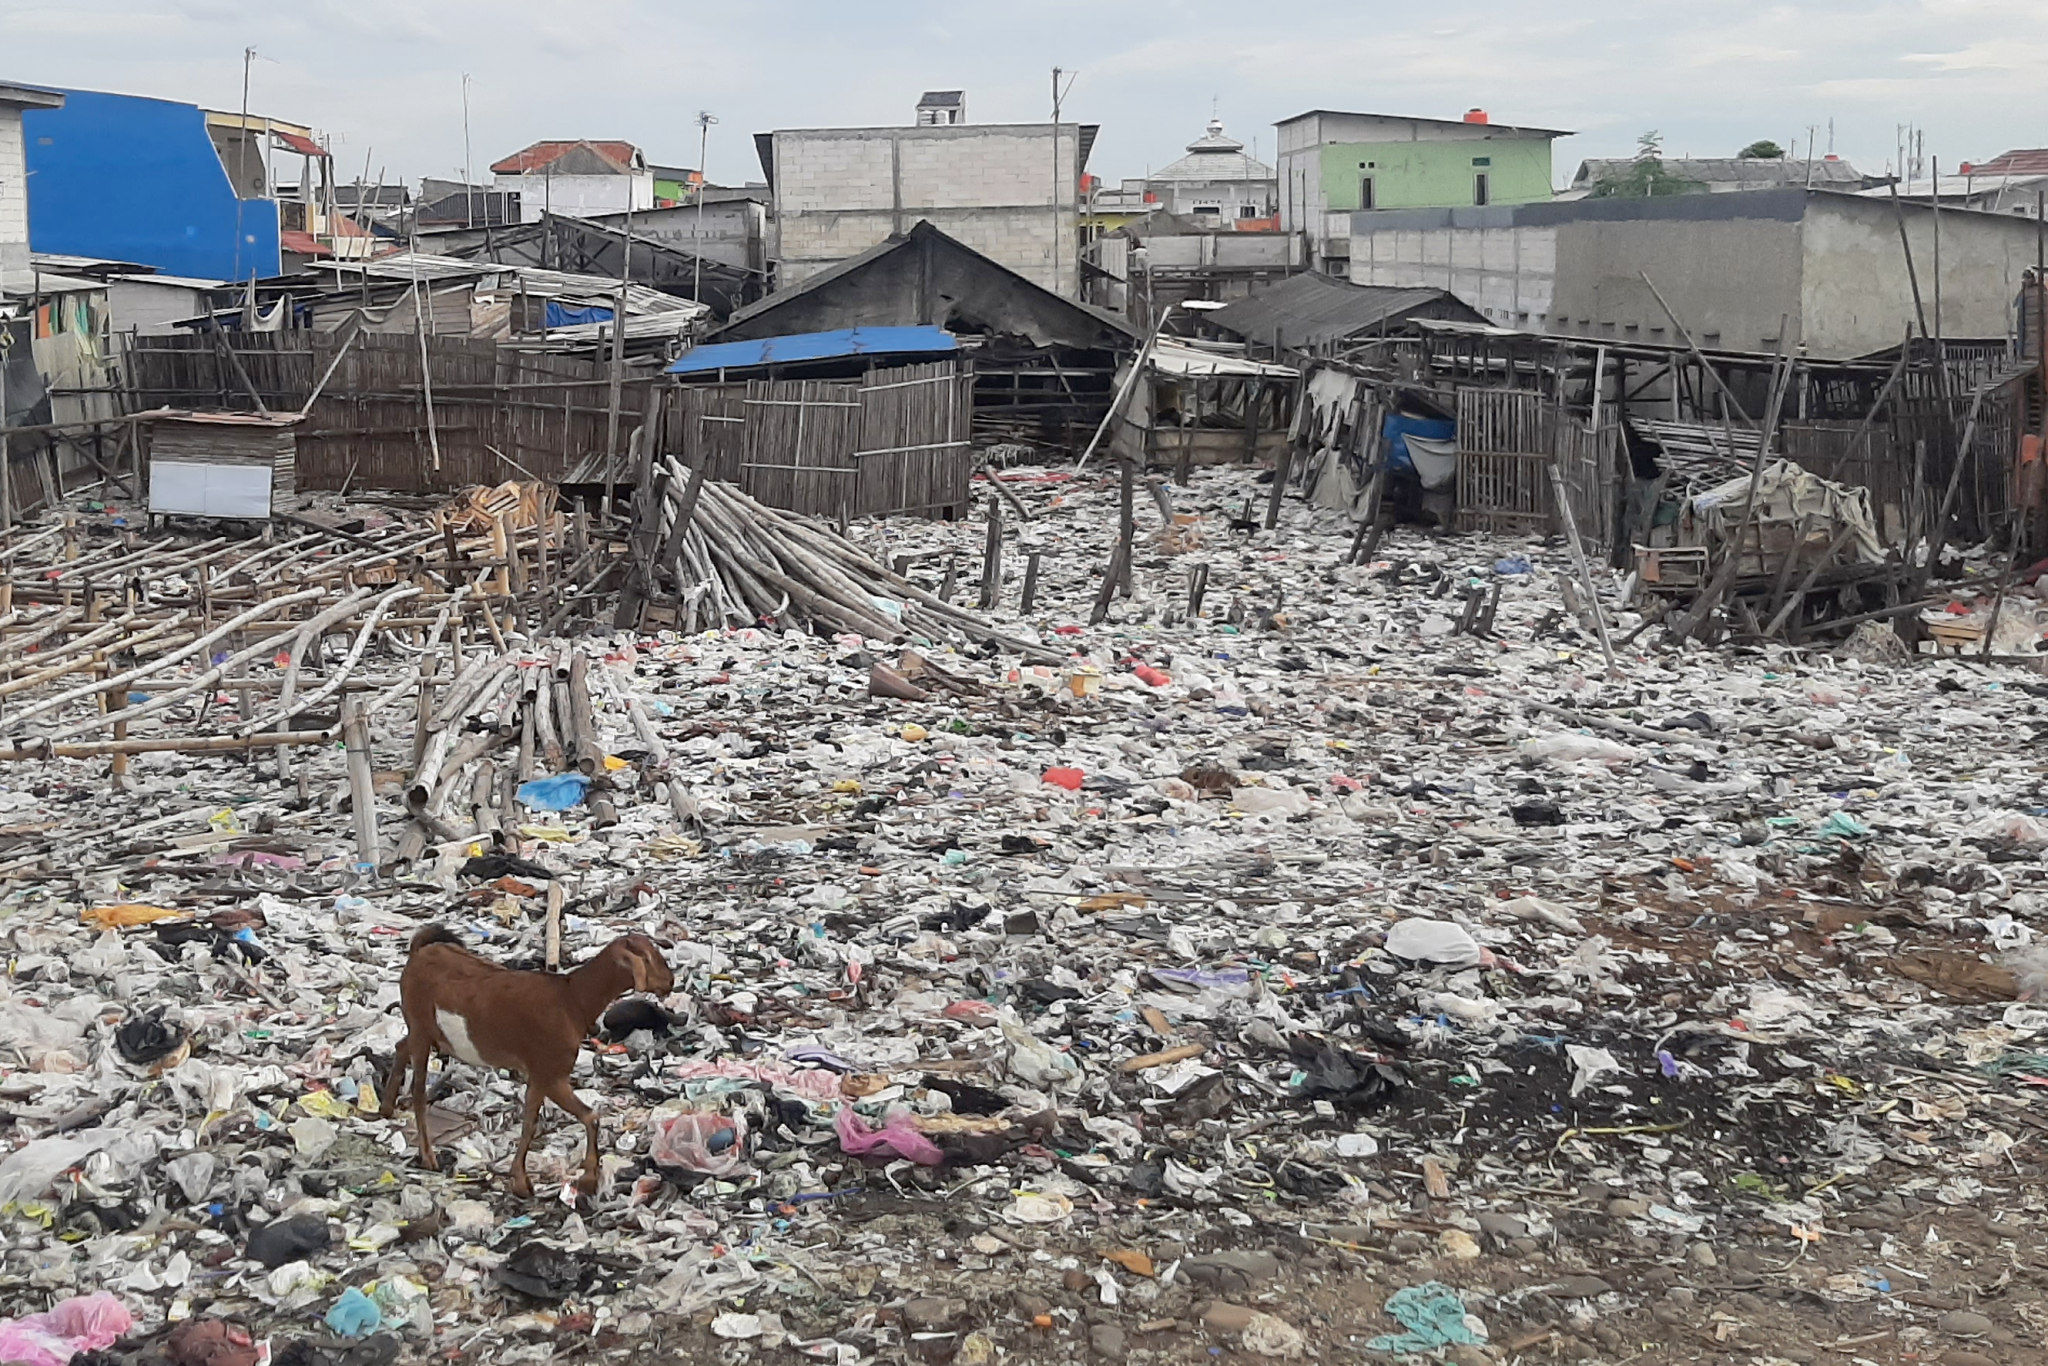 Hewan ternak mencari makanan diantara sampah yang menyebar di halaman perkampungan nelayan kawasan Kalibaru, Cilincing, Jakarta Utara. Foto: Ismail Pohan/TrenAsia